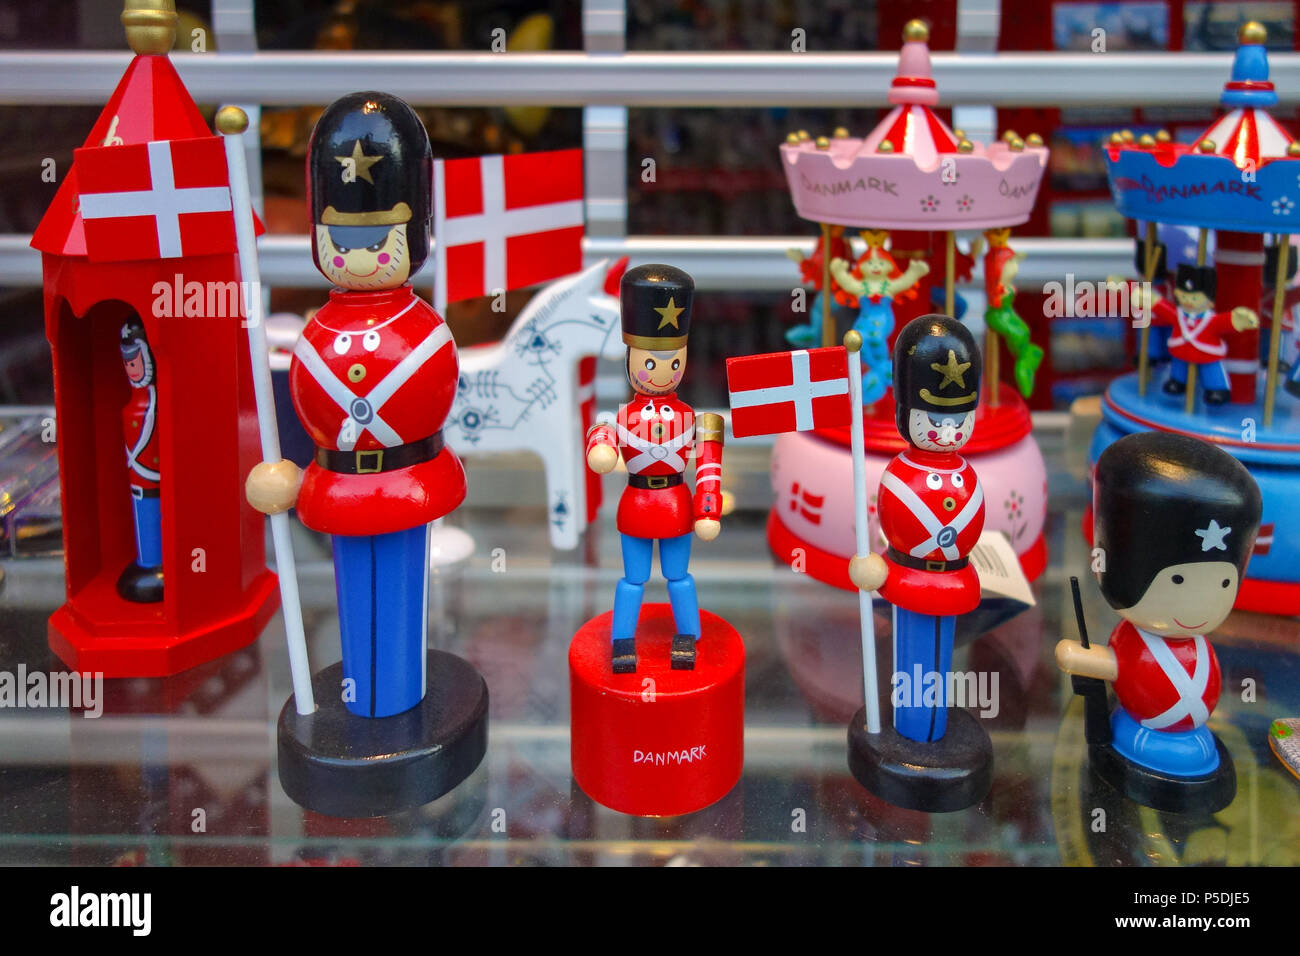 Fun et coloré, Toy Soldier figurines sur l'affichage à un magasin de souvenirs à Copenhague, Danemark Banque D'Images